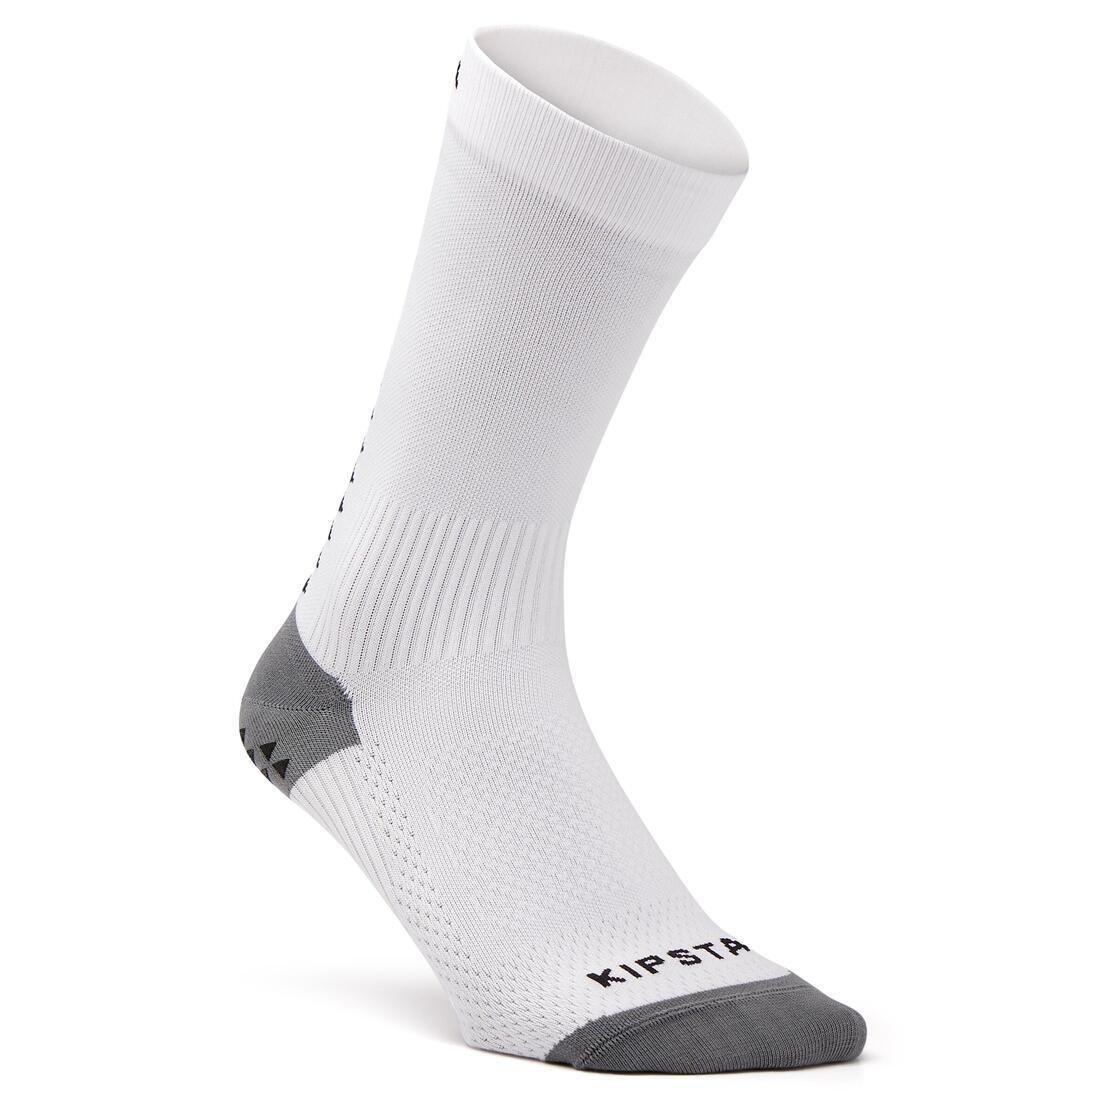 KIPSTA - Adult Short Non-Slip Football Socks Viralto Mid, Black